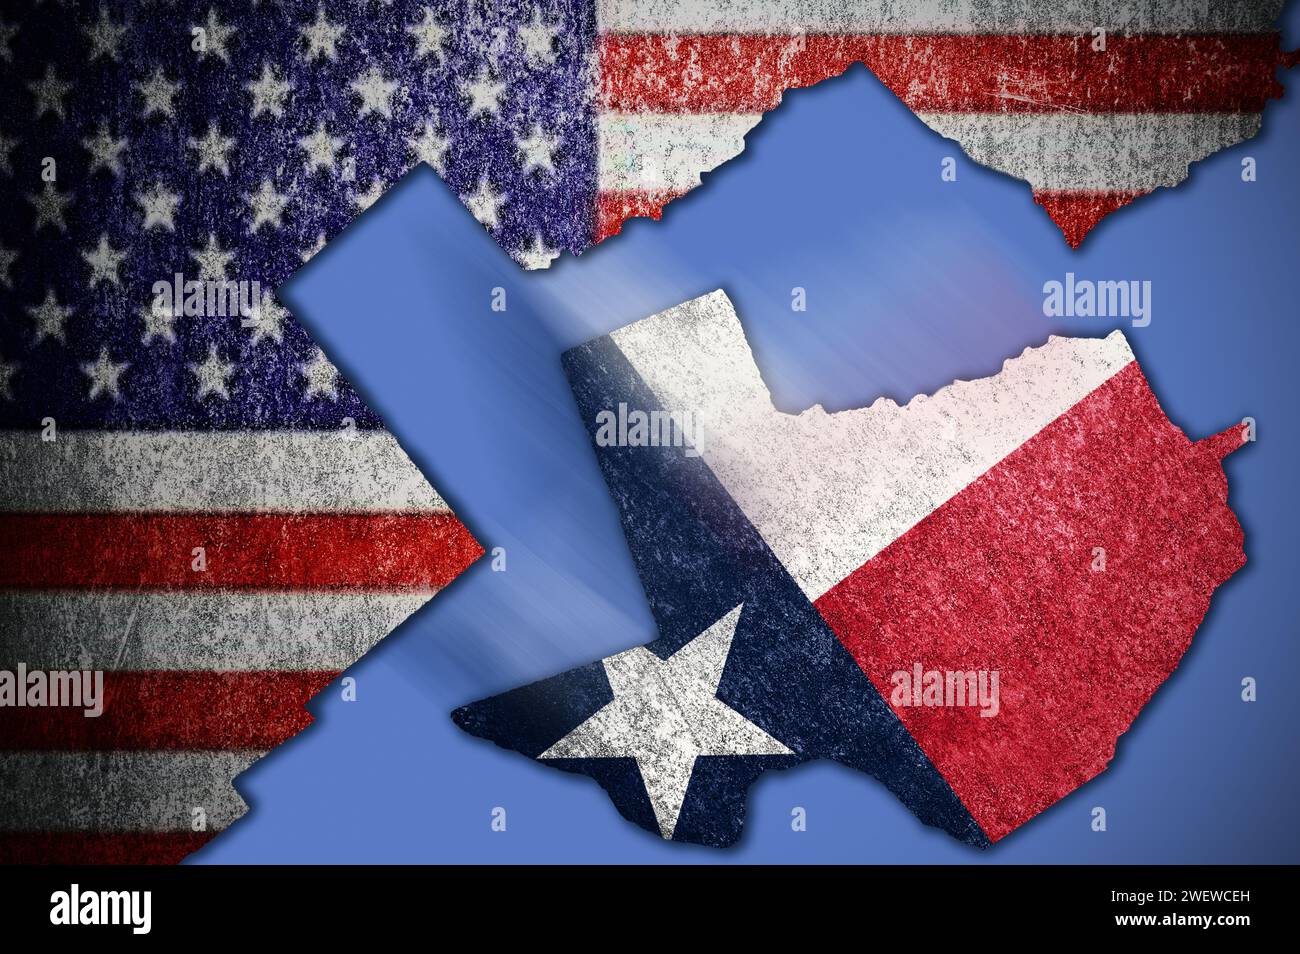 Abfahrt Texas. Texas unterscheidet sich von den USA. Das Territorium von Texas wird durch die Staatsflagge ausgewiesen. Texanische Identität innerhalb der Vereinigten Staaten. Stockfoto